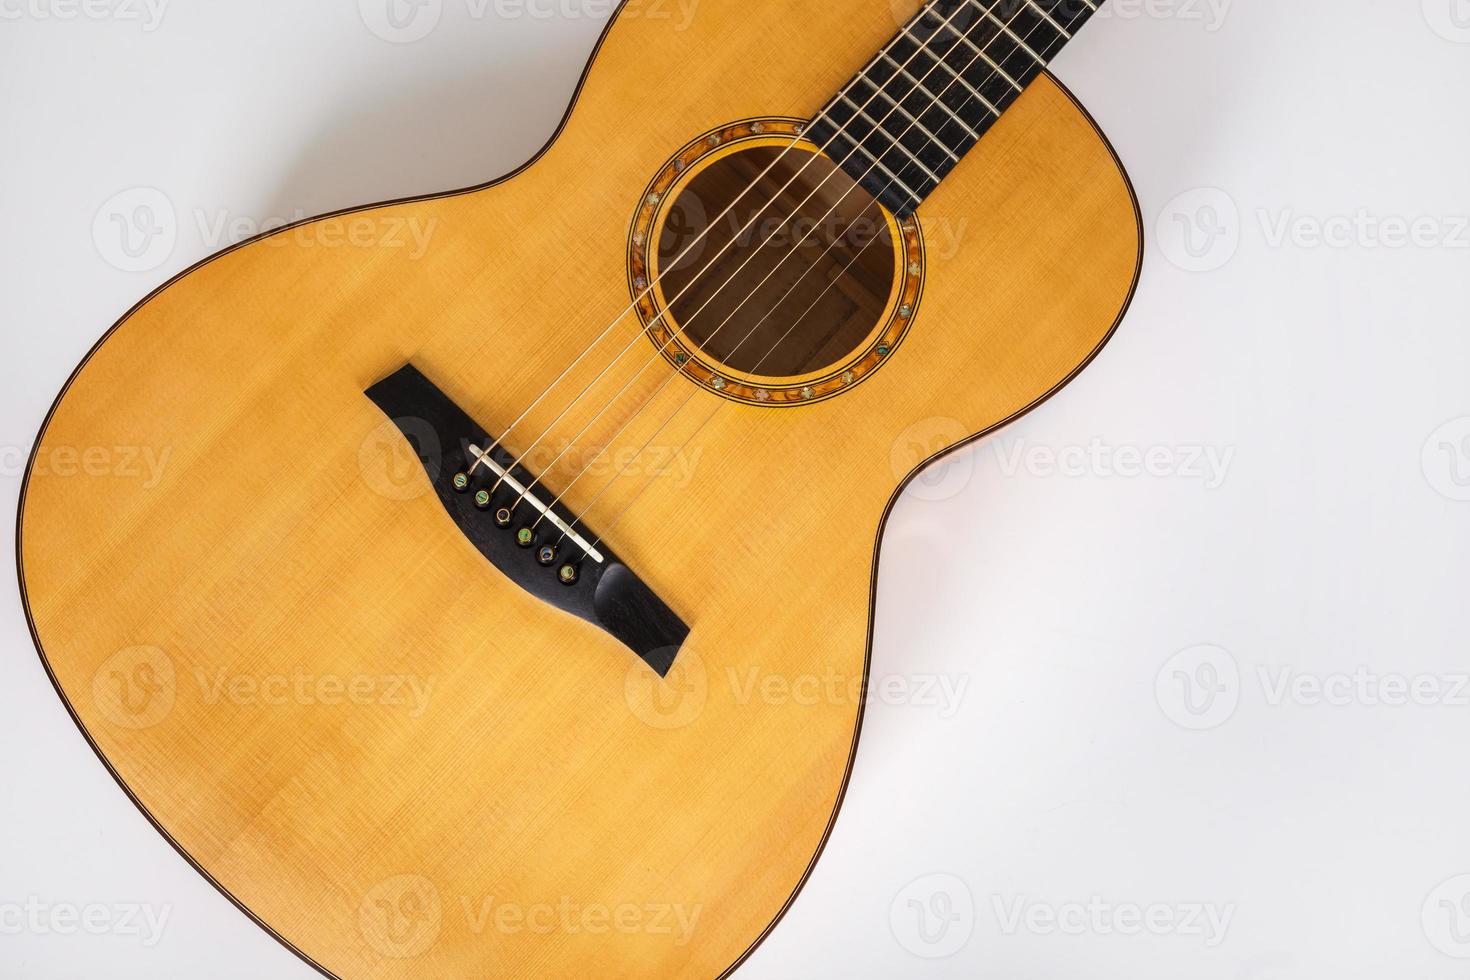 houtstructuur van benedendek van zes snaren akoestische gitaar op witte achtergrond. gitaar vorm foto